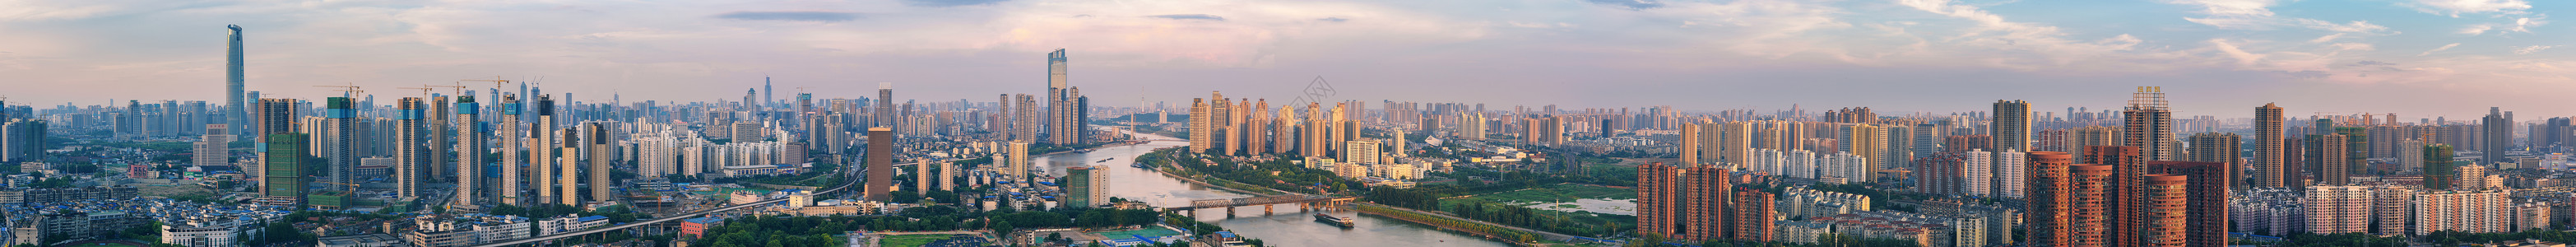 武汉城市风光全景接片高清图片